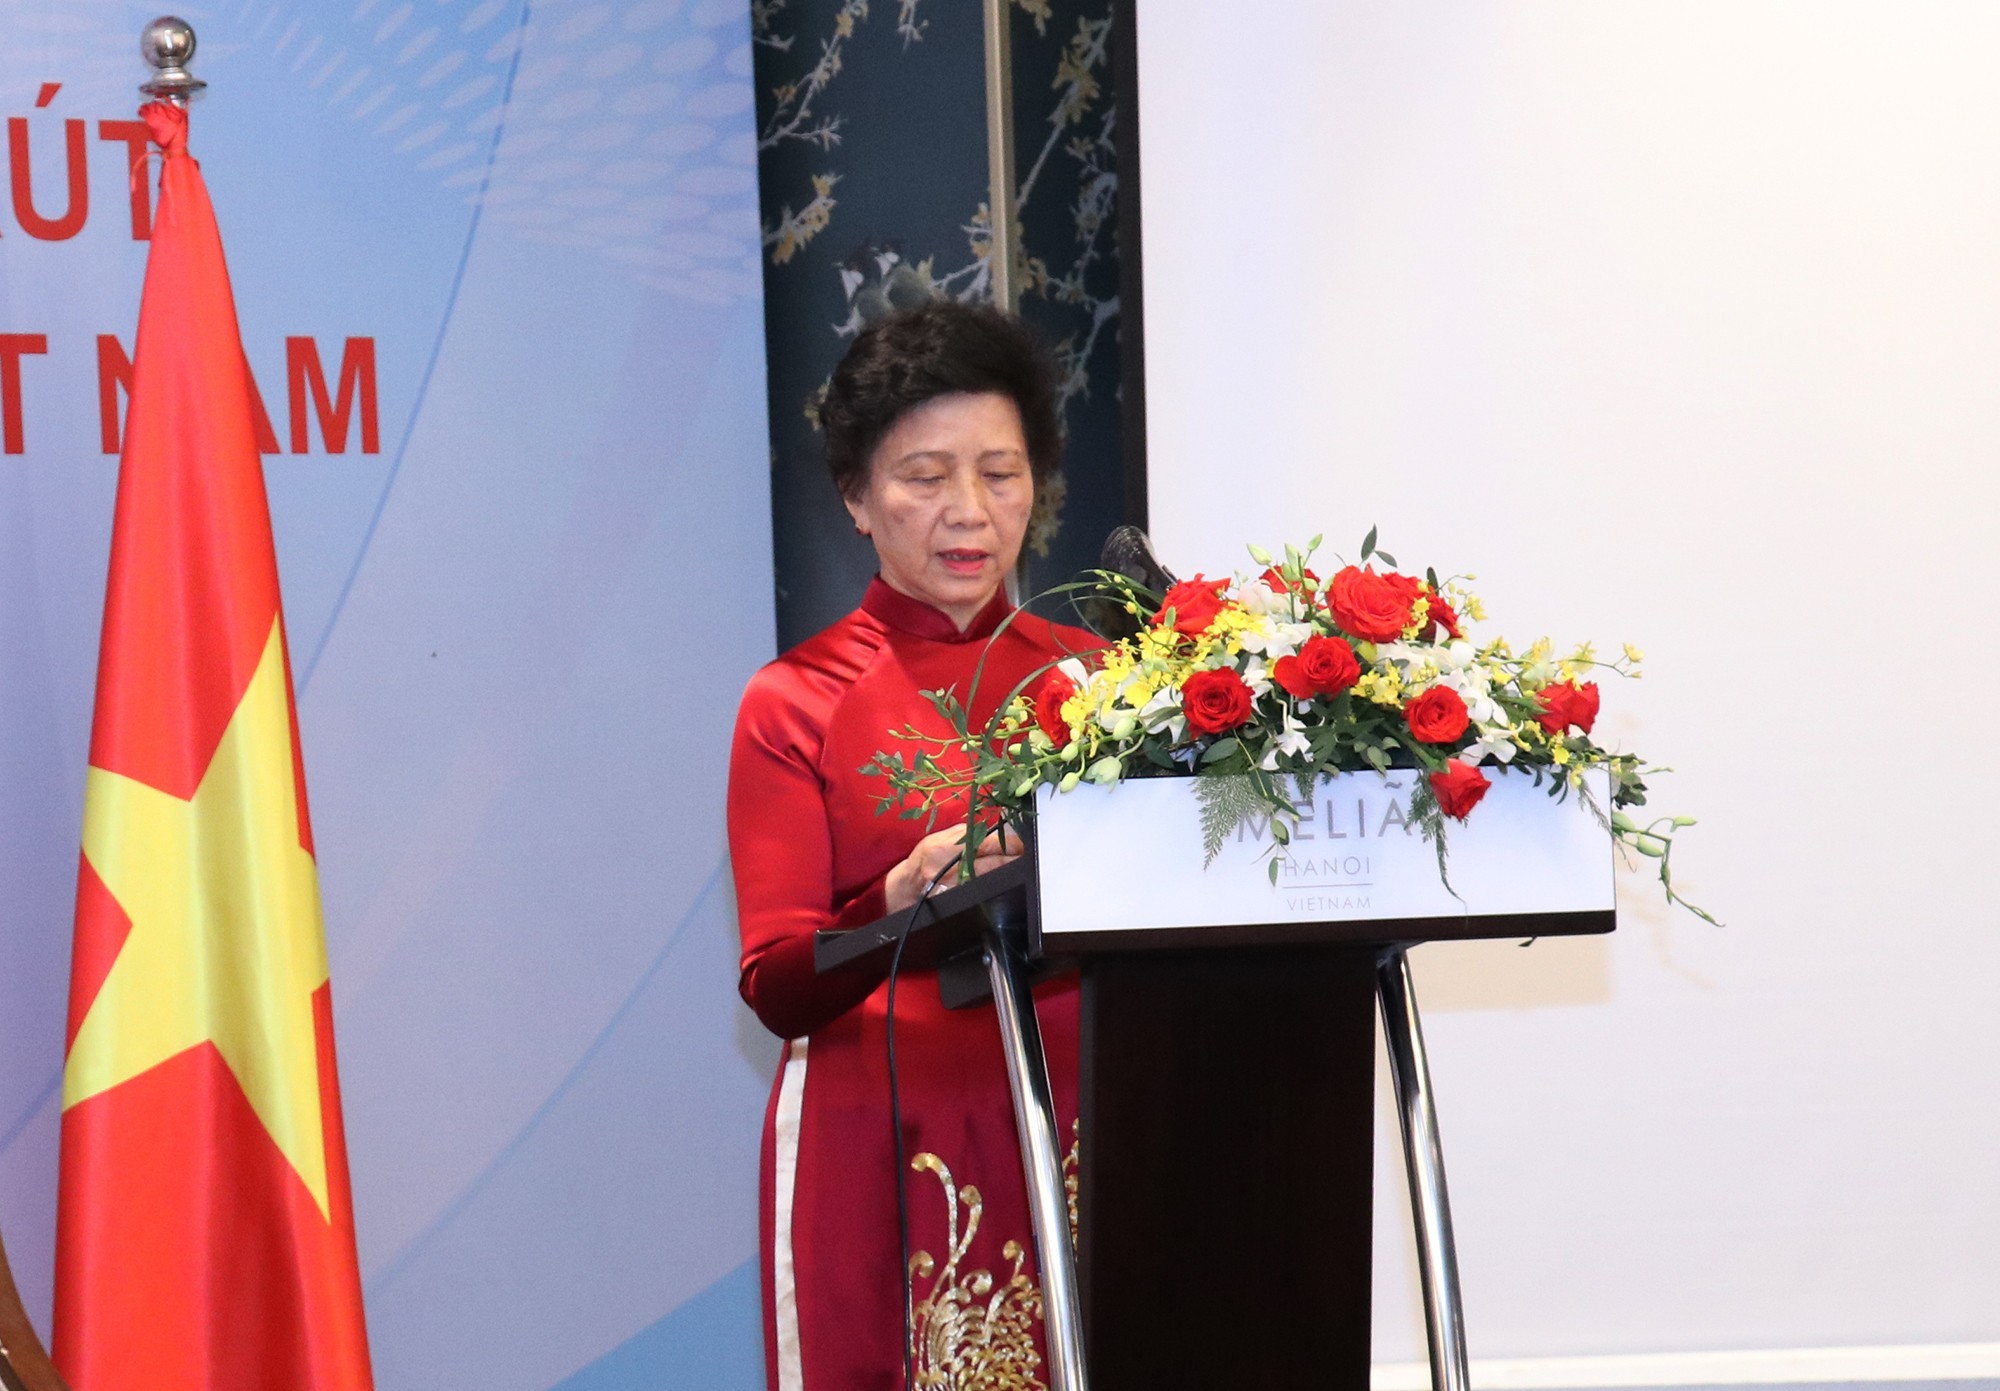 Bà Phương Song Liên, đại diện Câu lạc bộ cựu du học sinh Việt Nam tại Cuba phát biểu tại buổi gặp gỡ Thủ tướng Cuba Manuel Marreo Cruz hồi cuối tháng 9/2022 (Ảnh: Thu Hà).